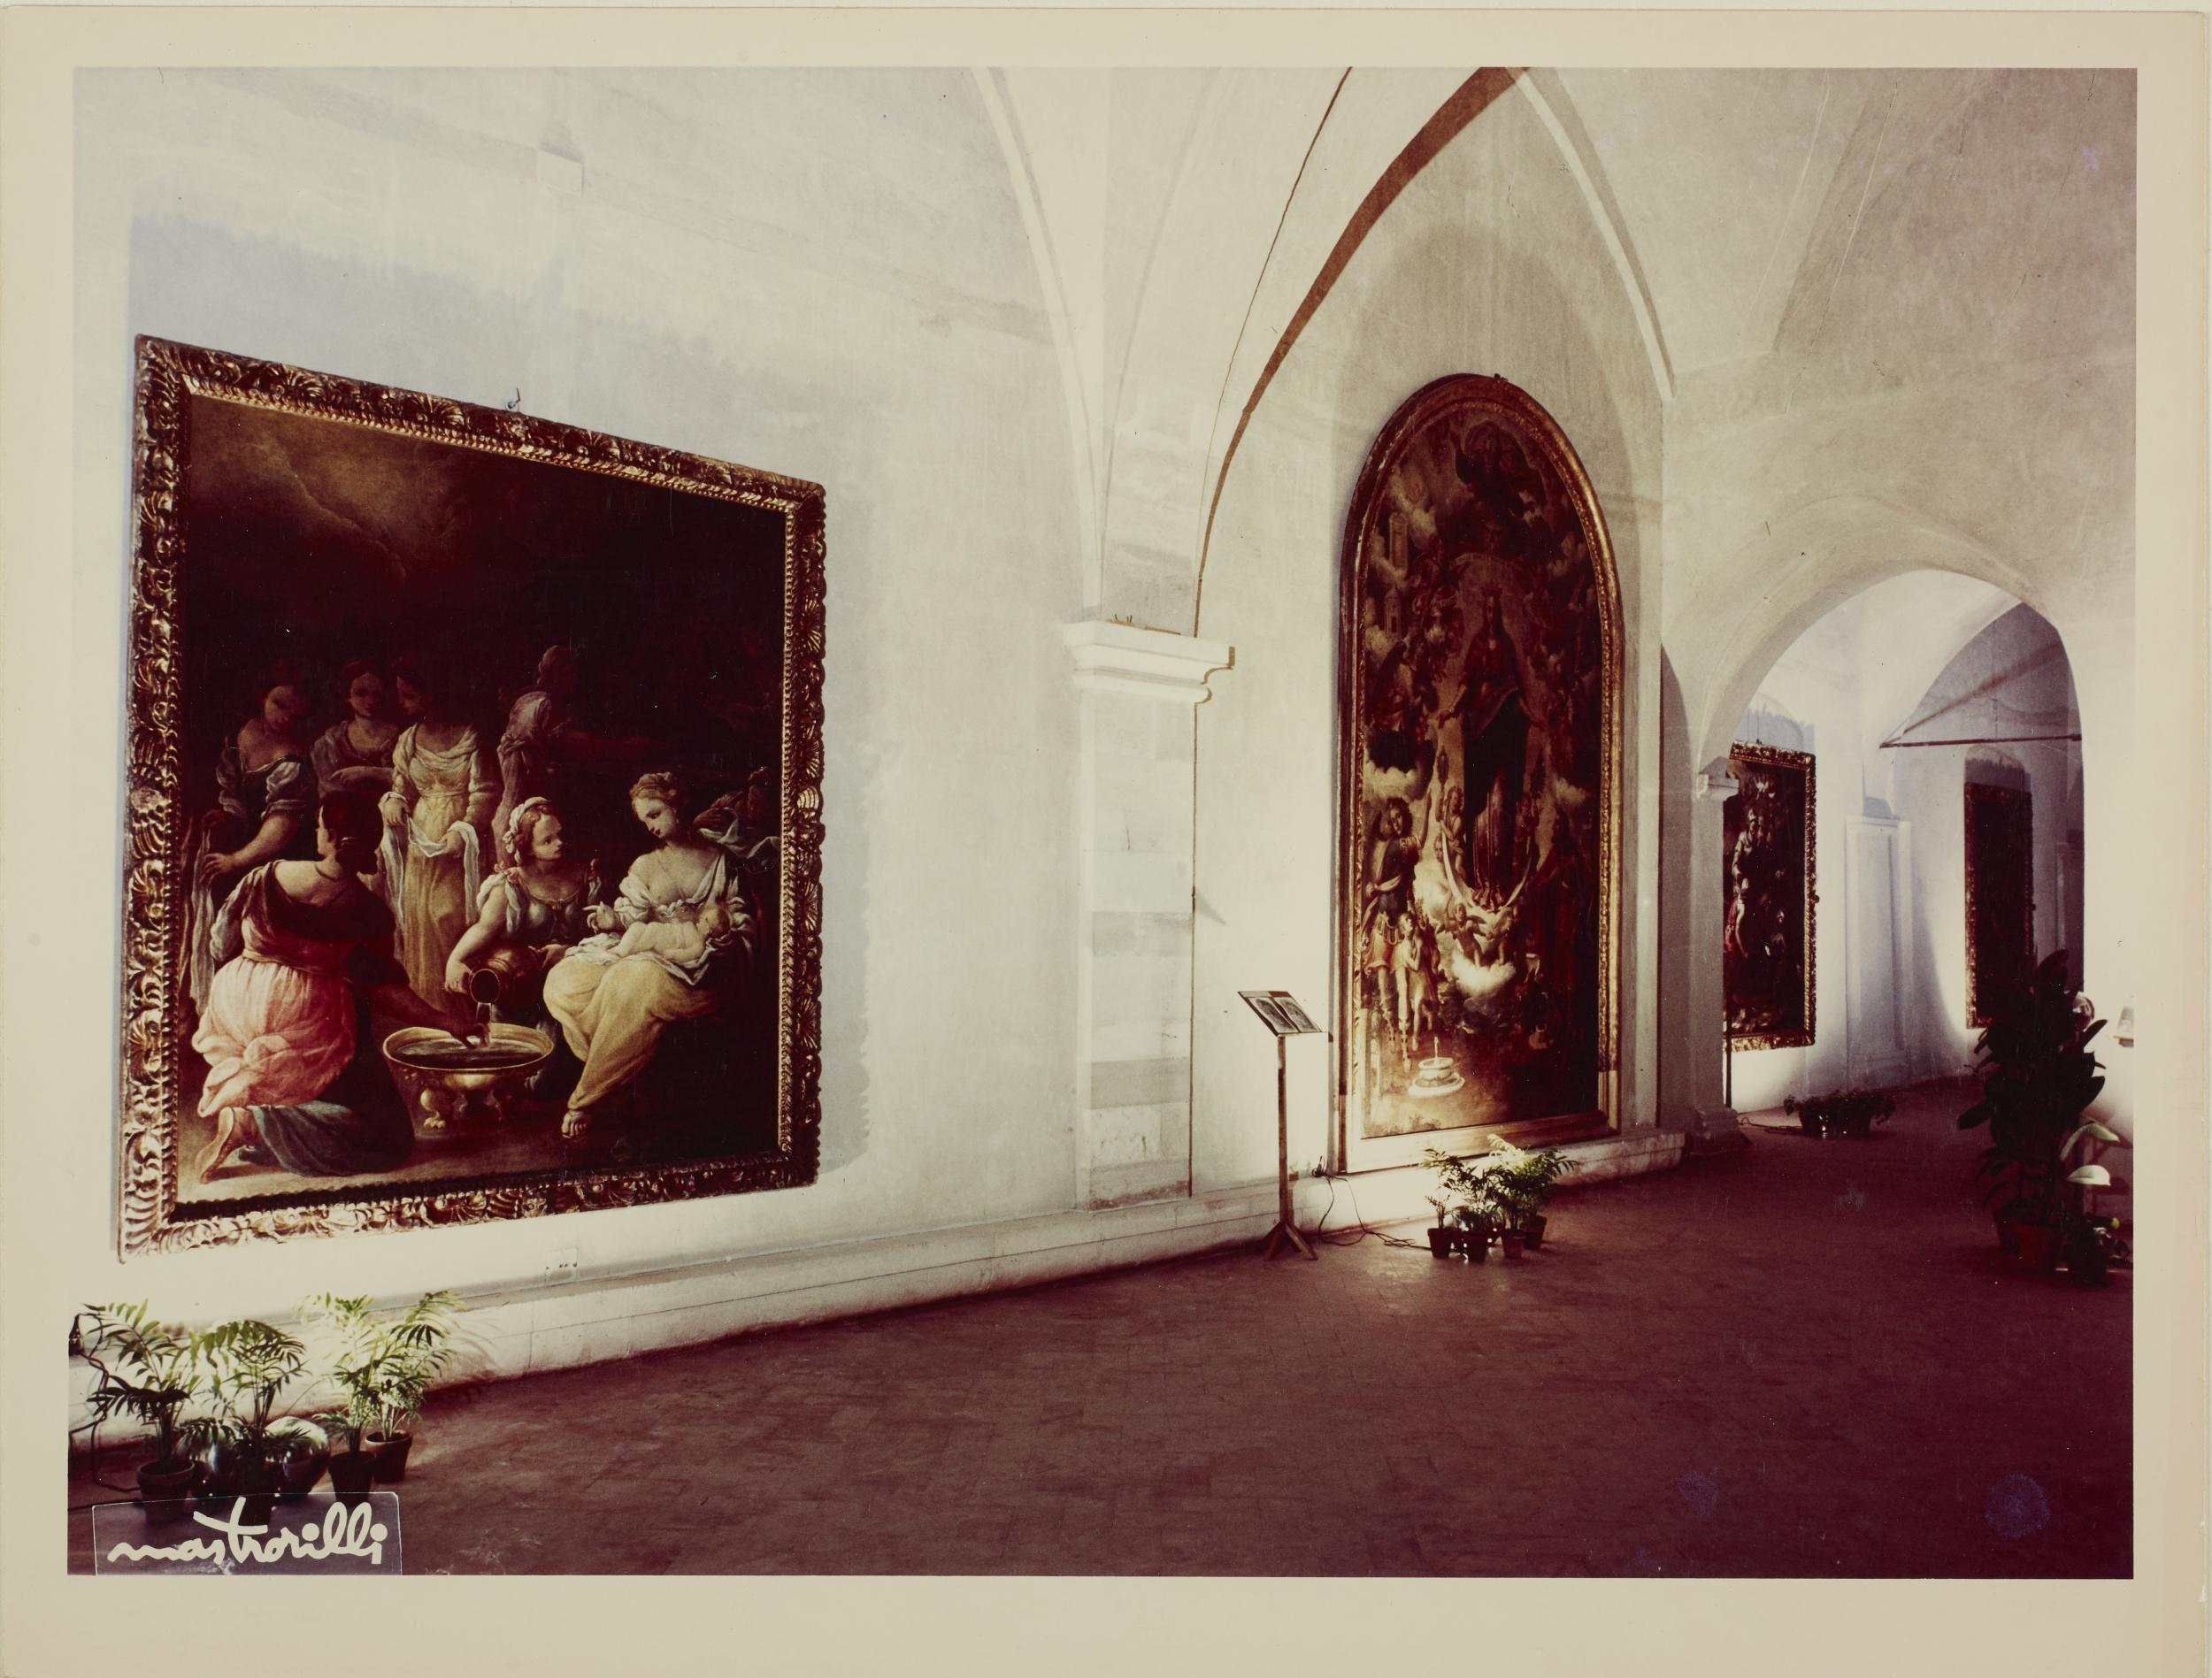 Fotografo non identificato, Bari - Castello Svevo, allestimento della mostra per la XI settimana dei musei, 1968, gelatina ai sali d'argento/carta, MPI136575